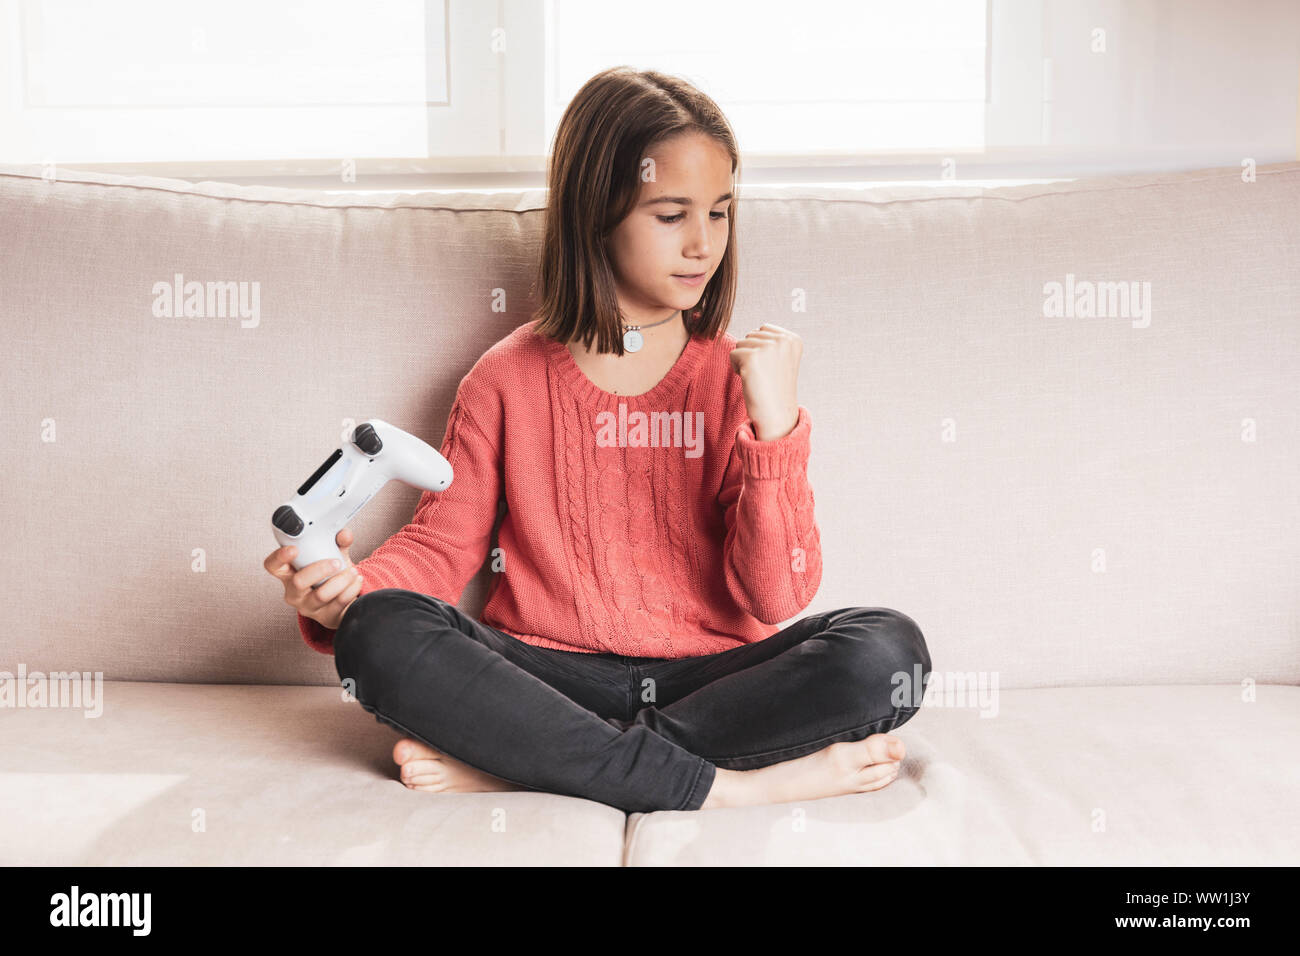 Niña jugando en casa con la videoconsola sentada en el sofá Stock Photo